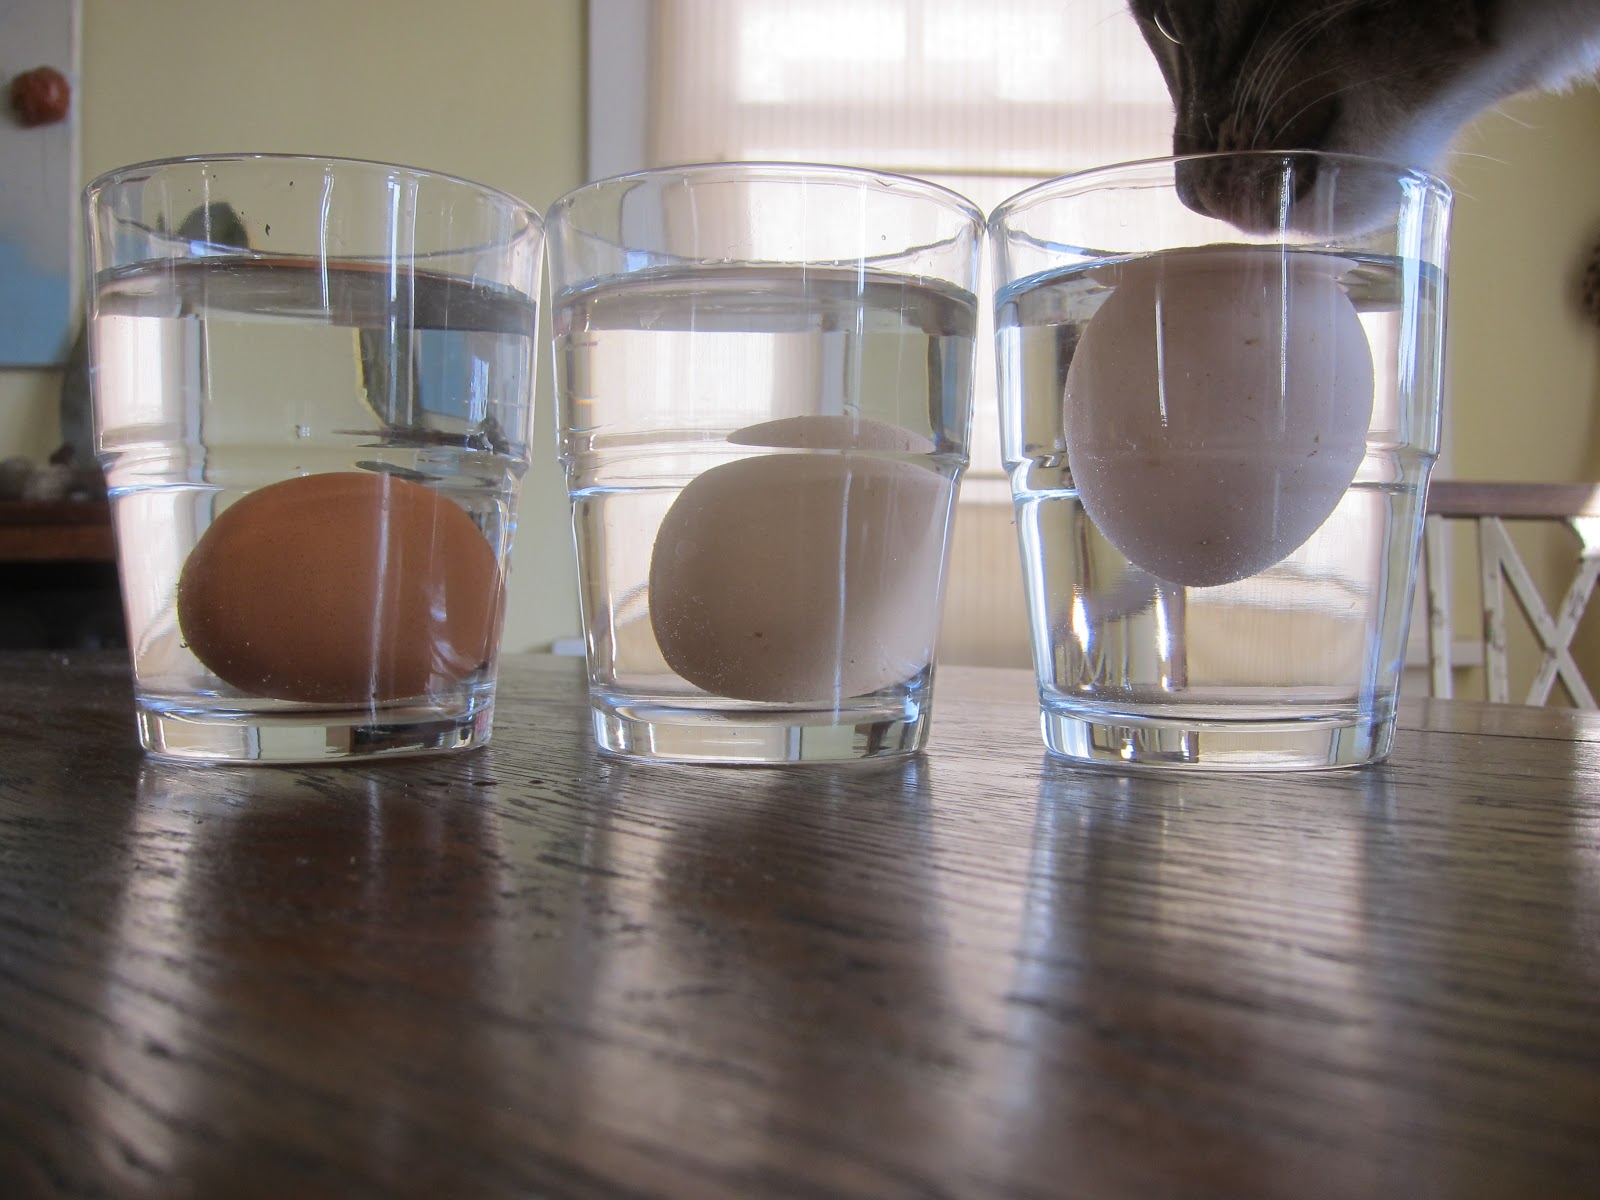 Свежесть сырого яйца. Свежесть яйца в стакане. Яйцо в стакане с водой. Яйцо в стакане с водой свежесть. Свежесть яйца в соленой воде.